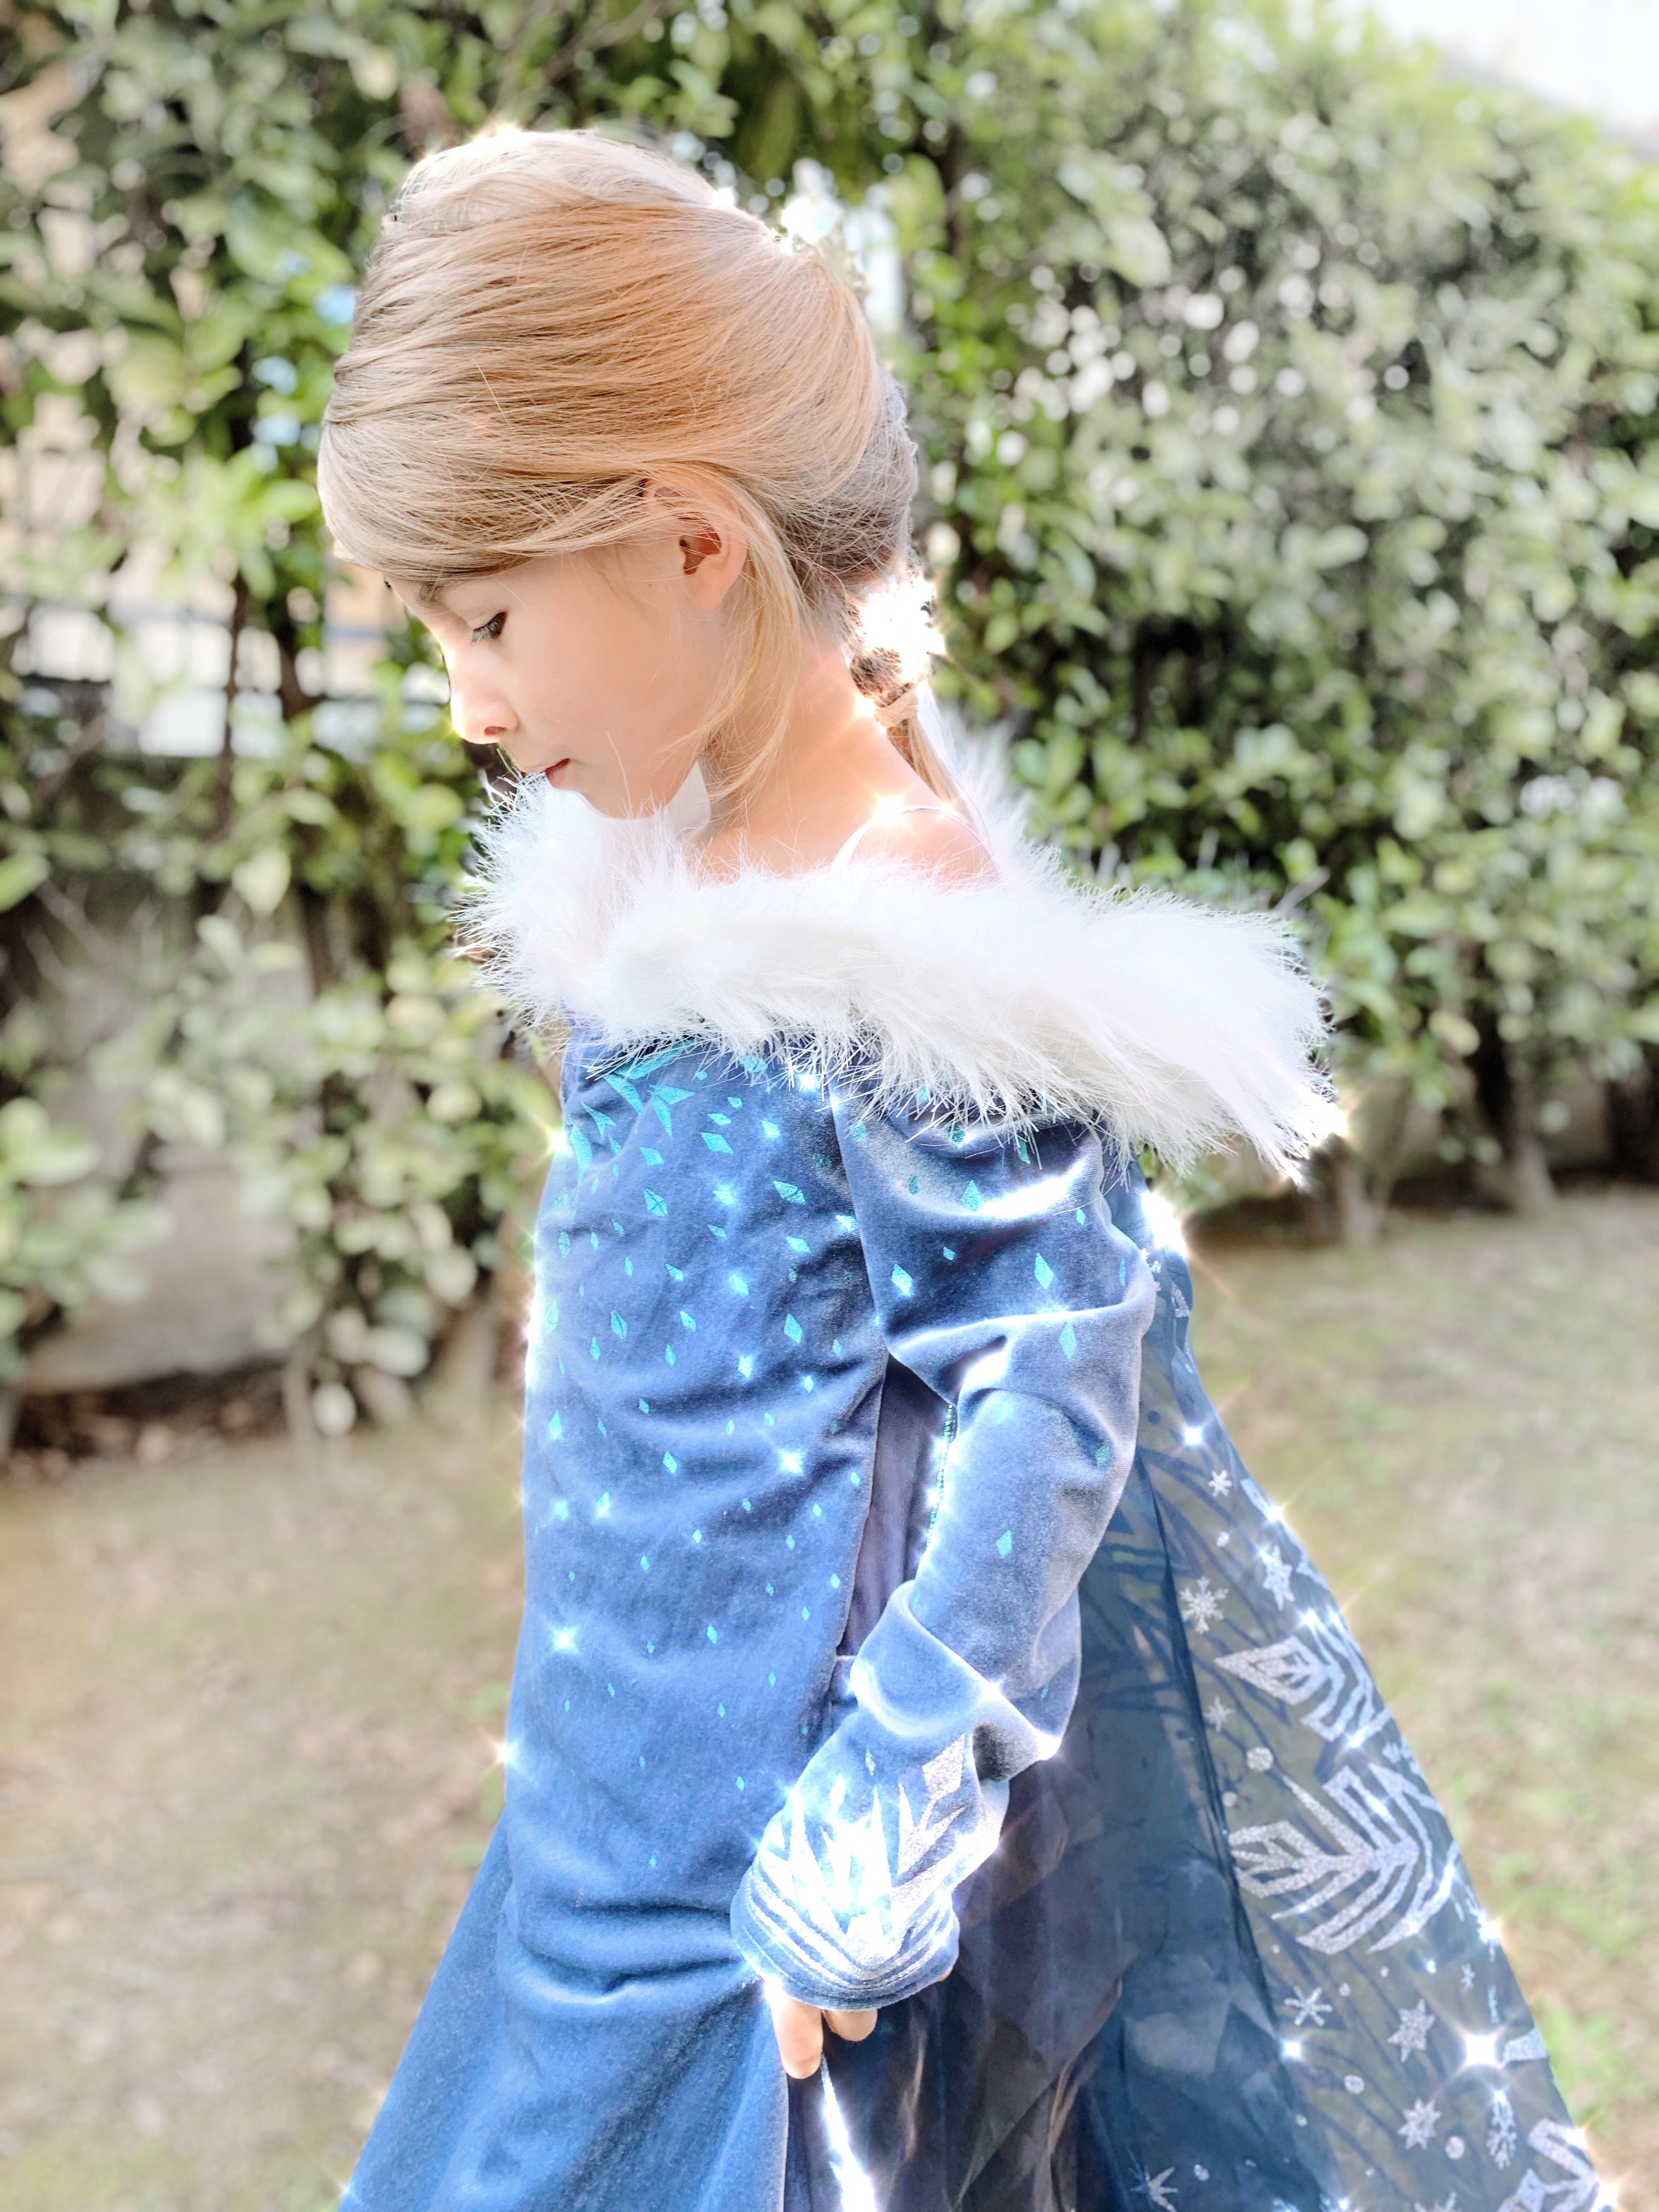 Elsa Frozen Costume Bambina Principessa Carnevale Regina del Ghiaccio delle Nevi Abito con Cappotto,Pantaloni,Accessori Cosplay Cerimonia Festa Compleanno Comunione Ragazze Fantasia Lungo Vestire